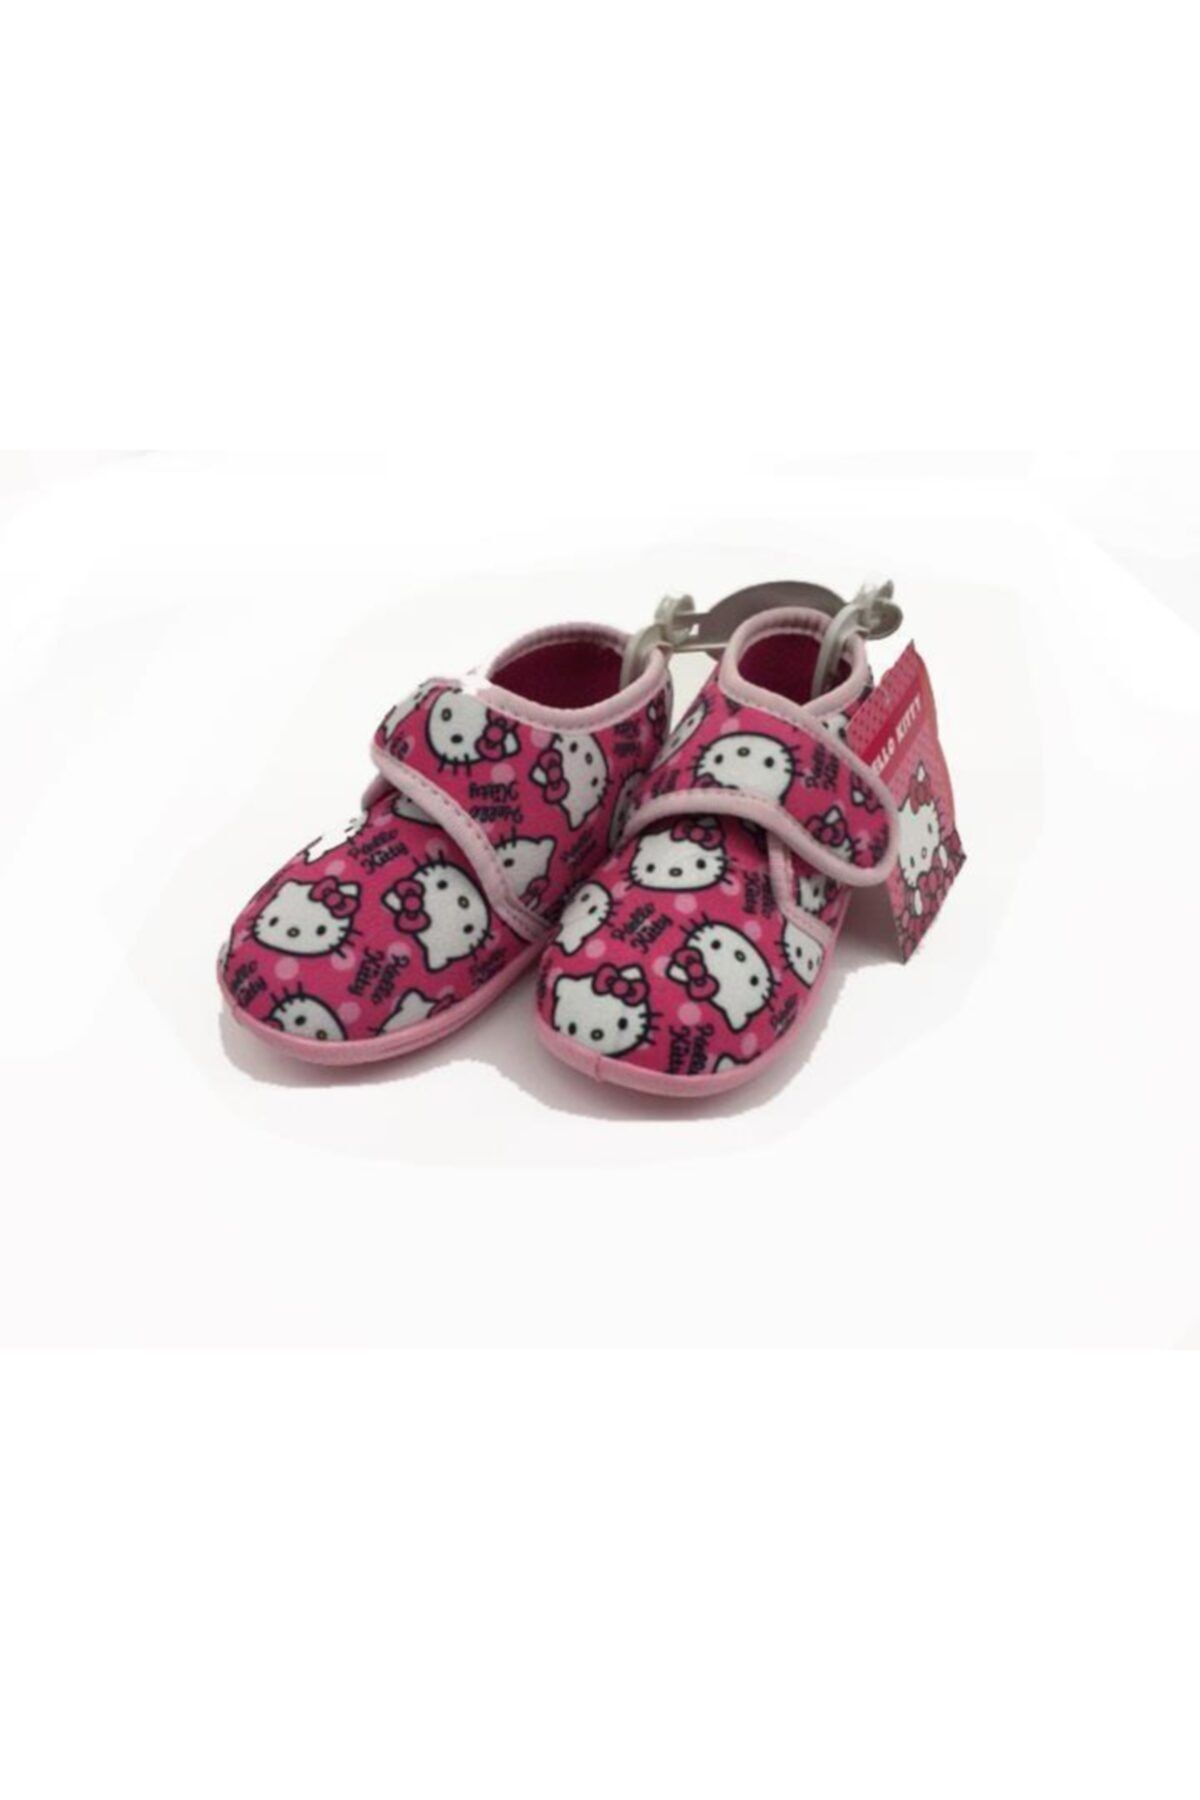 Hakan Çanta Hello Kitty Lisanslı Panduf Çocuk Ayakkabısı 25 Numara